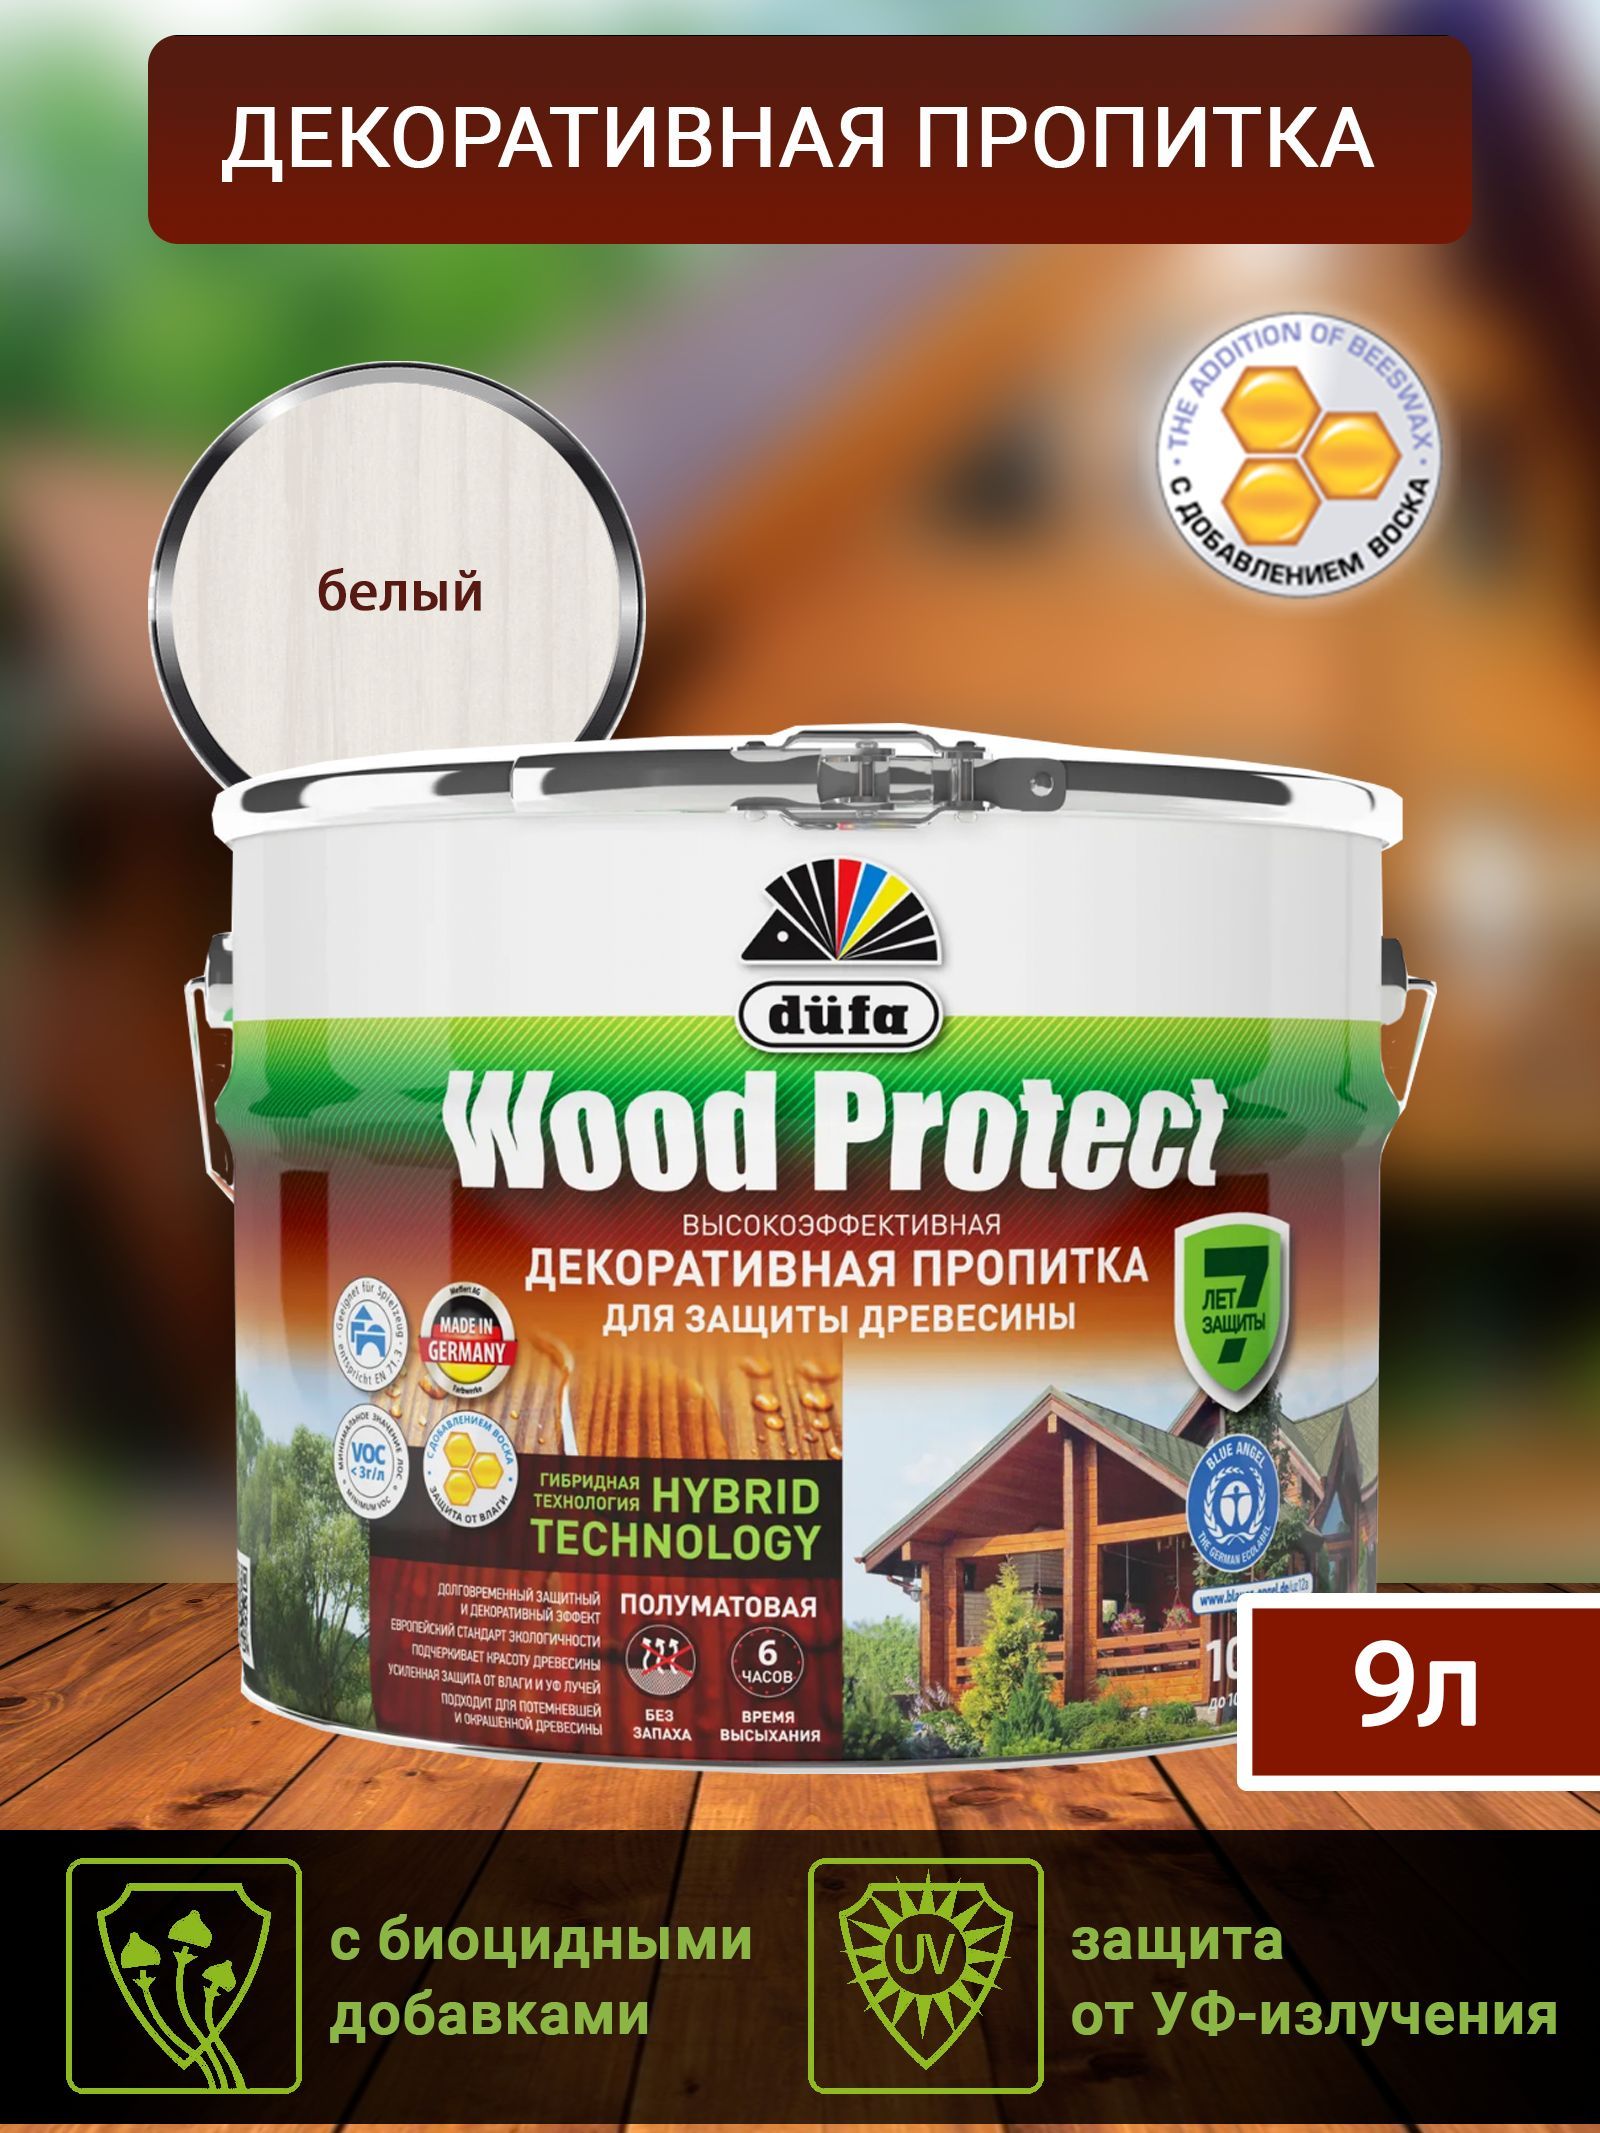 Dufa Пропитка “Wood Protect” для защиты древесины; белый 9 л, шт